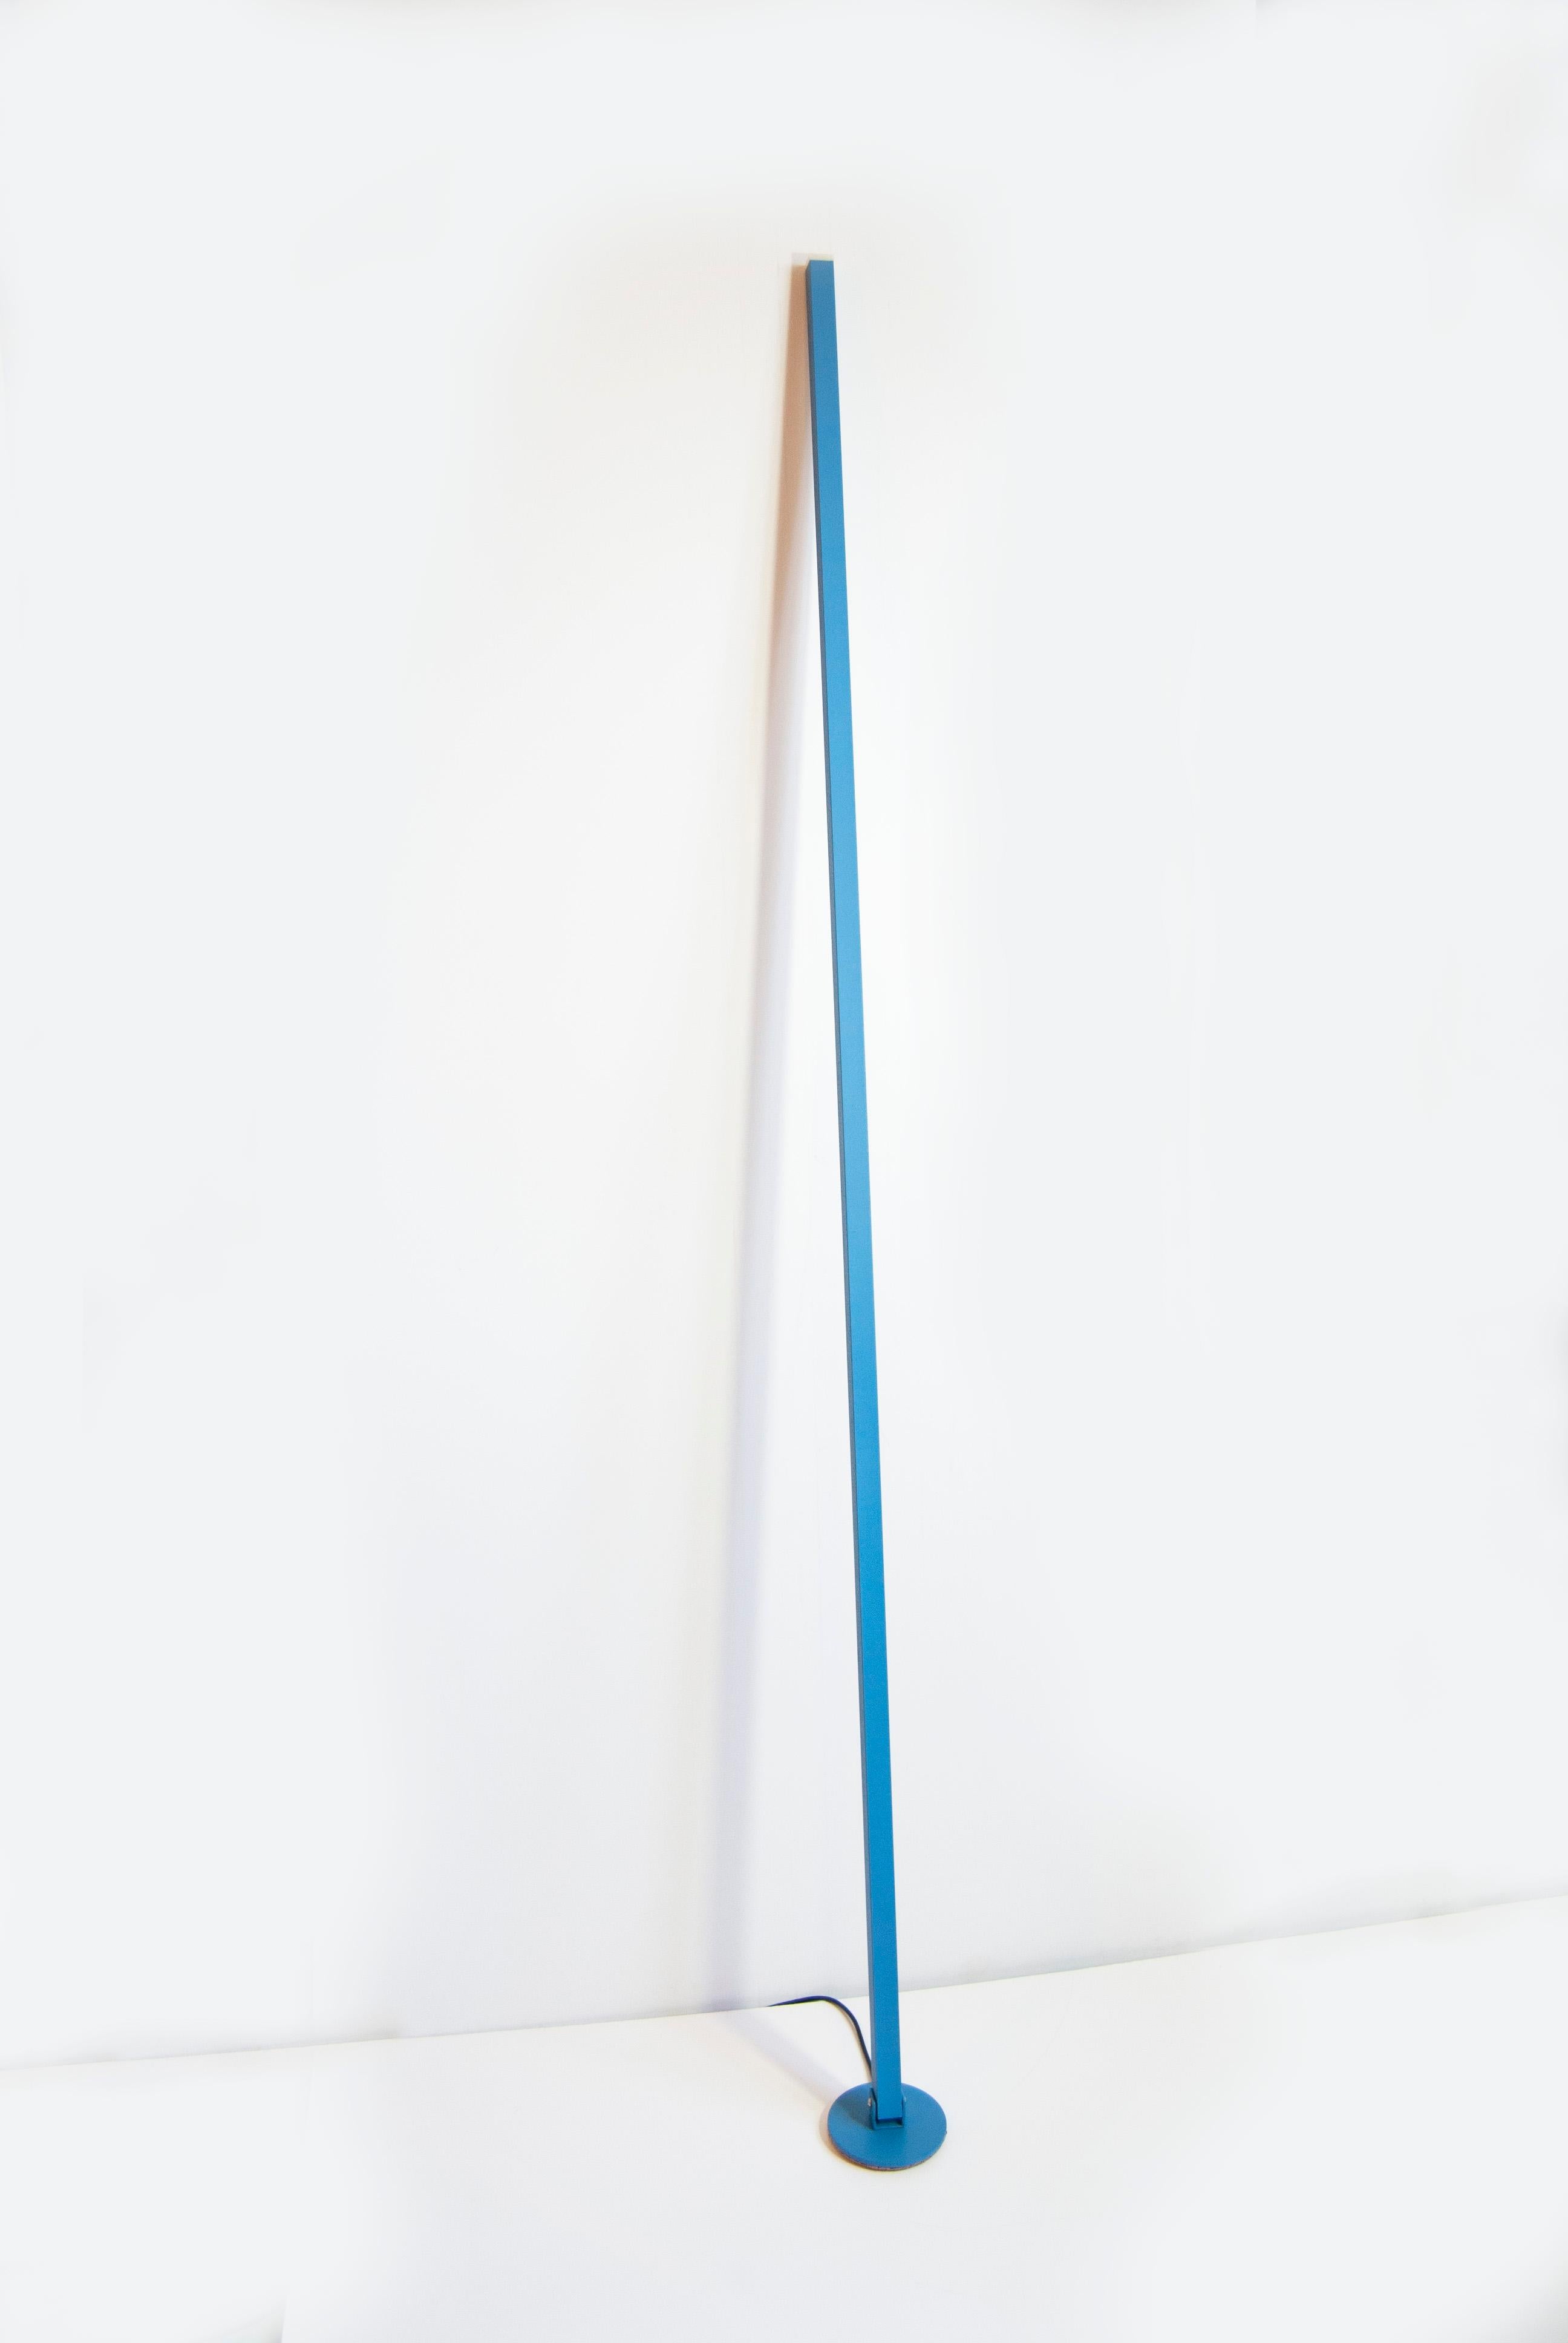 Contemporary Gica Contra Floor Lamp Hand Made Minimalist Italian Design by Tommaso Cristofaro For Sale